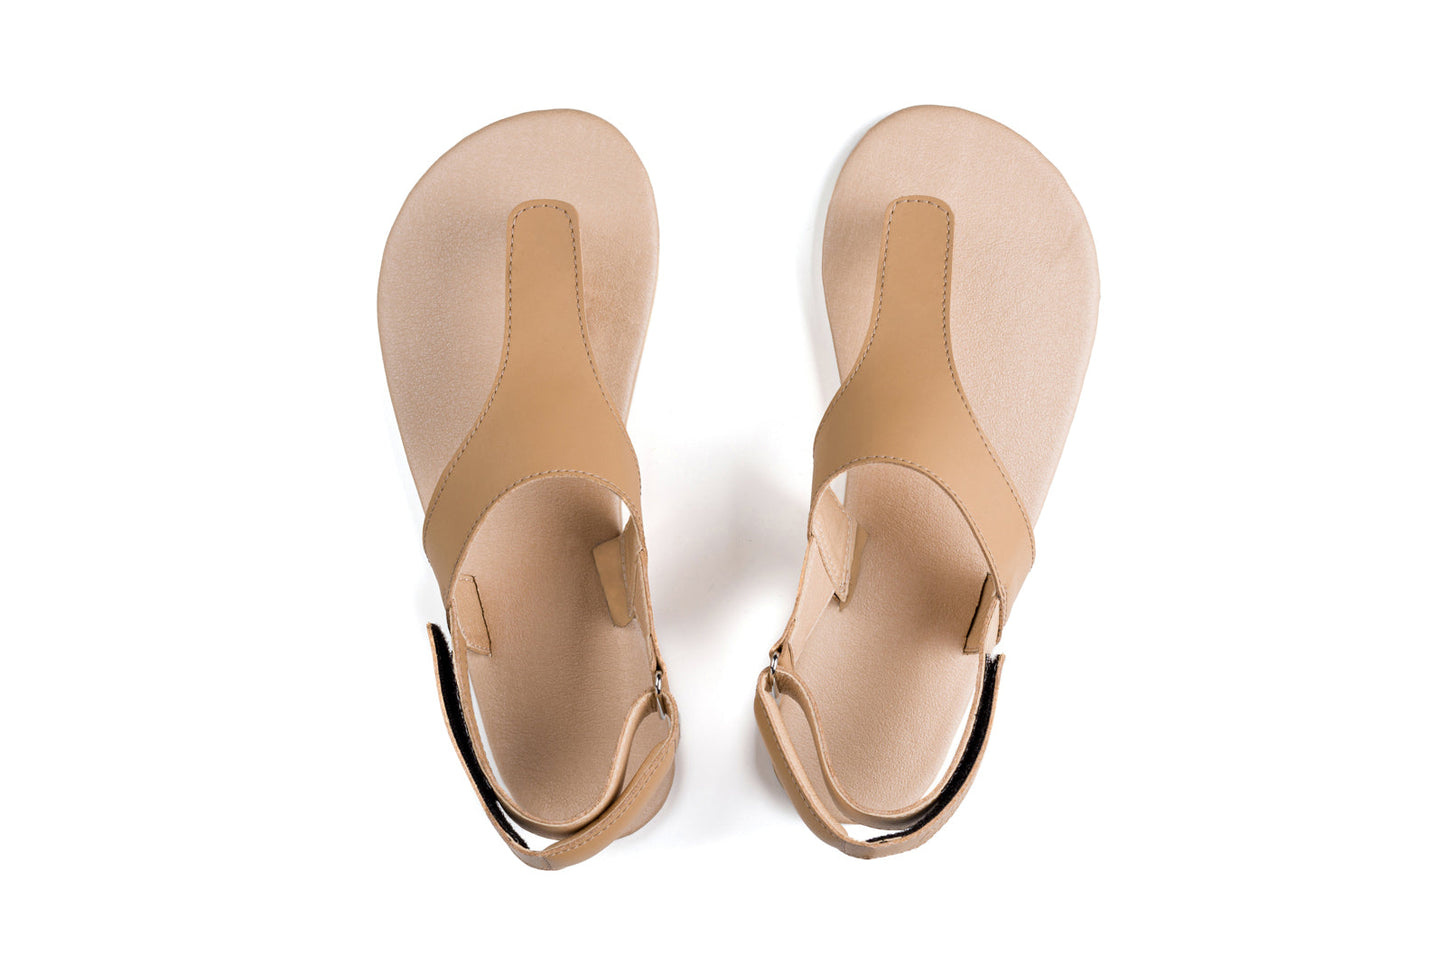 Ahinsa Simple barfods sandaler til kvinder i farven beige, top